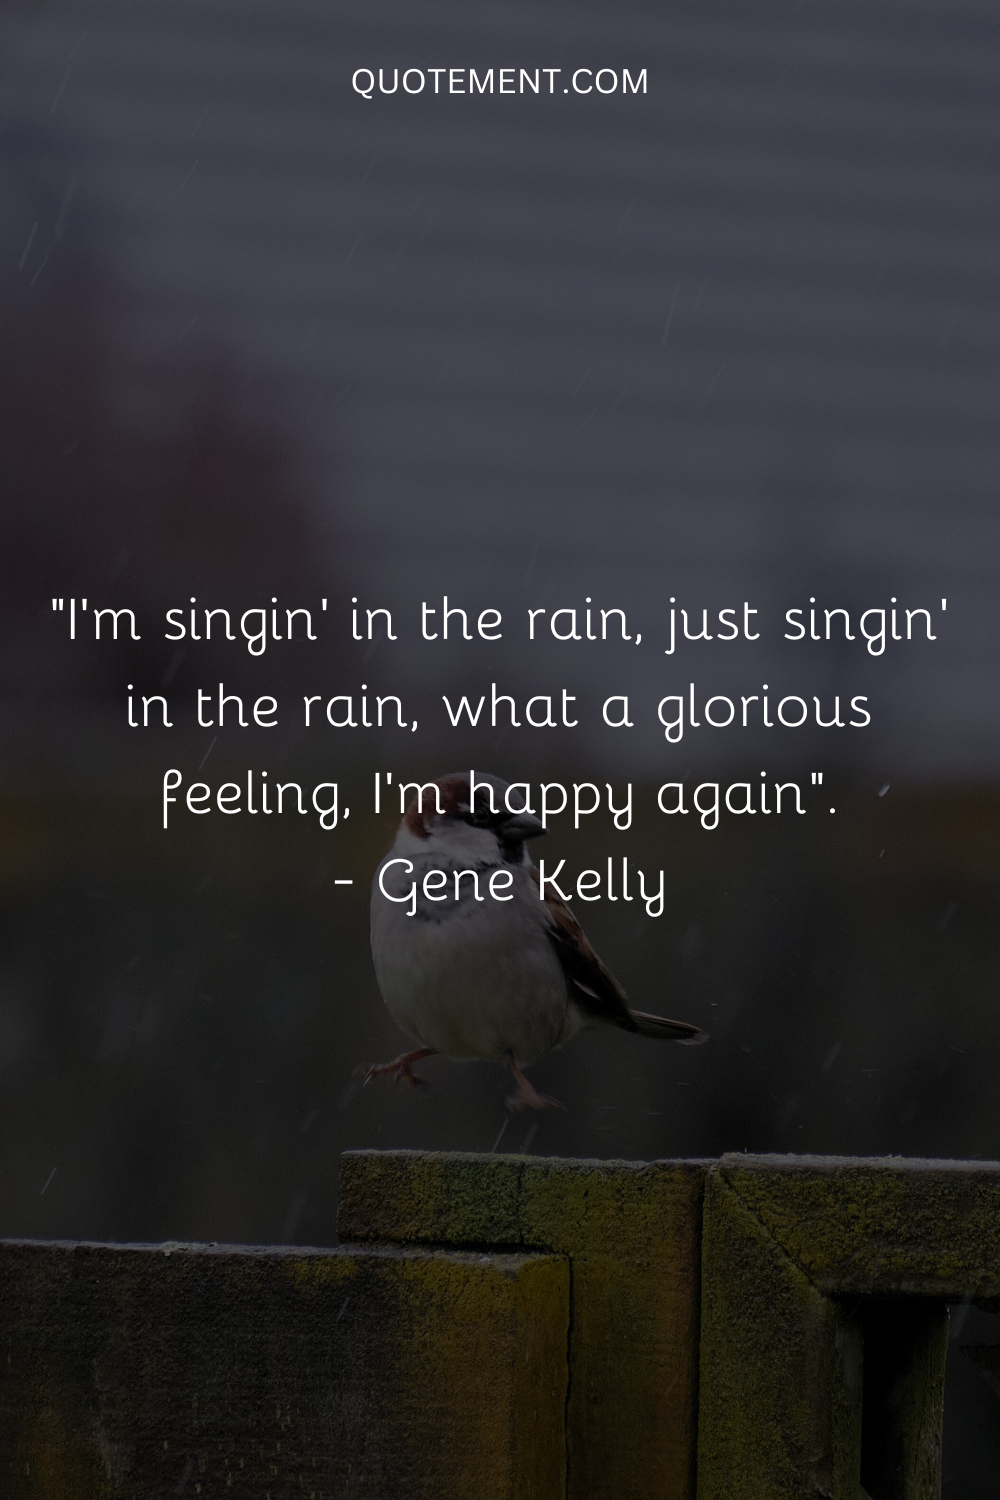 Estoy cantando bajo la lluvia, sólo cantando bajo la lluvia, qué sensación tan gloriosa, soy feliz de nuevo